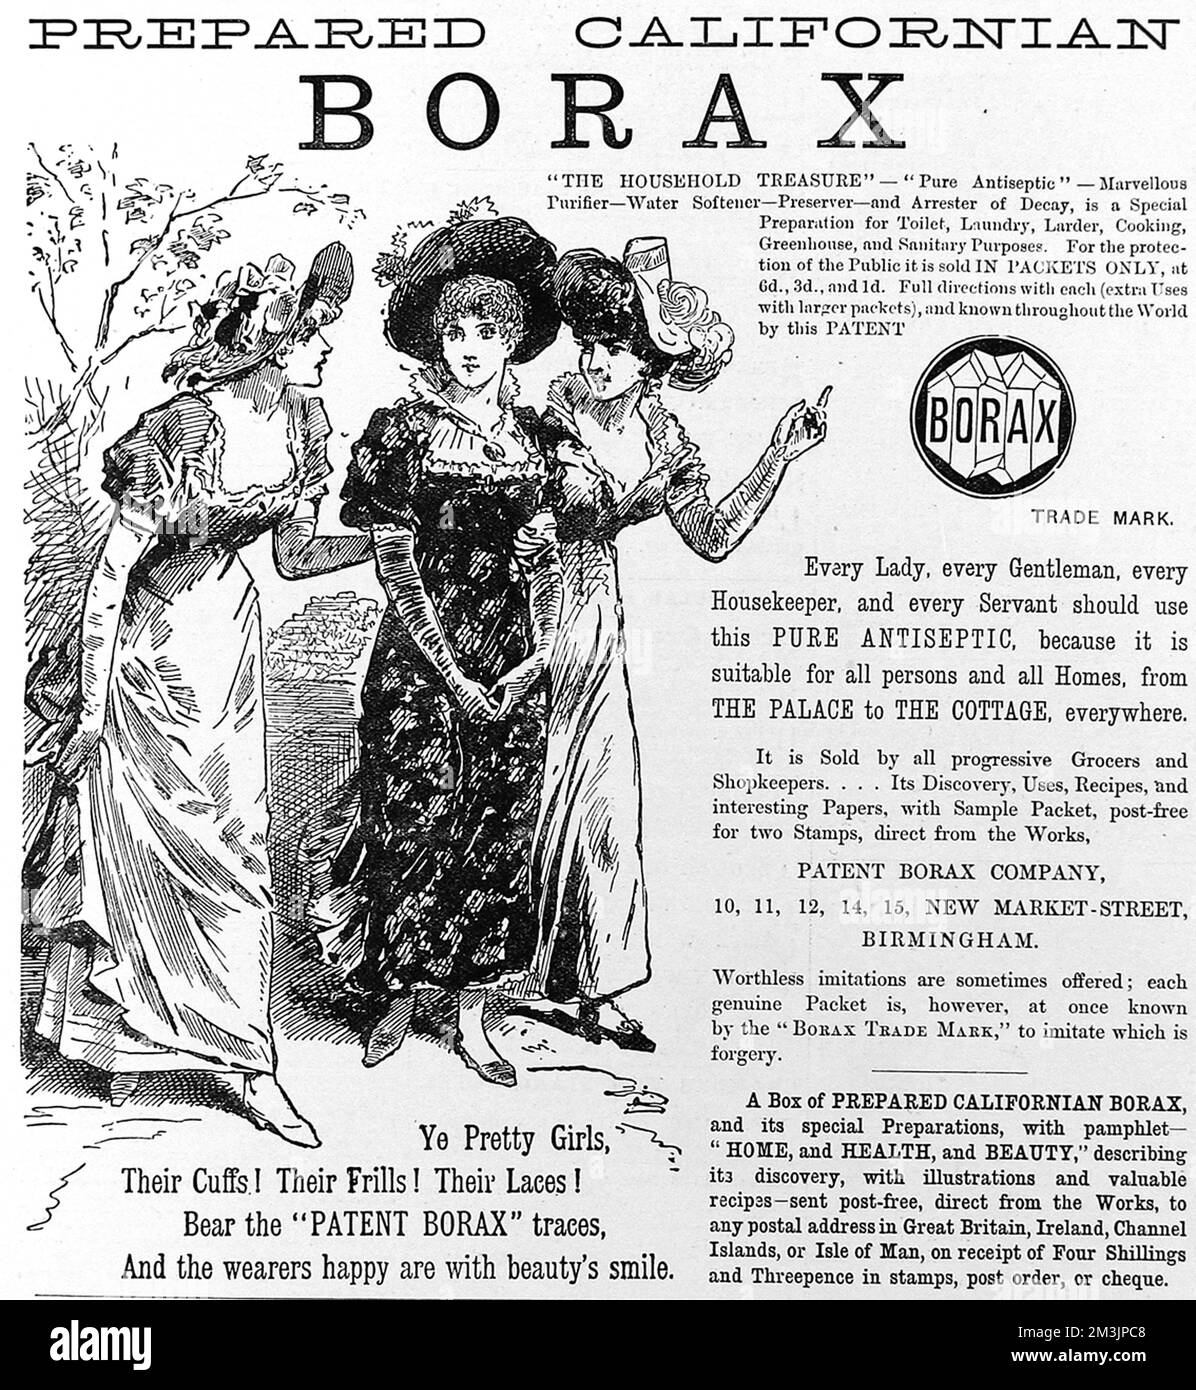 Une publicité romantique pour Borax antiseptique de 1885. Le borax a été utilisé pour une grande variété d'emplois domestiques étant efficace comme agent antibactérien, nettoyant, fongicide et blanchissant. 1885 Banque D'Images